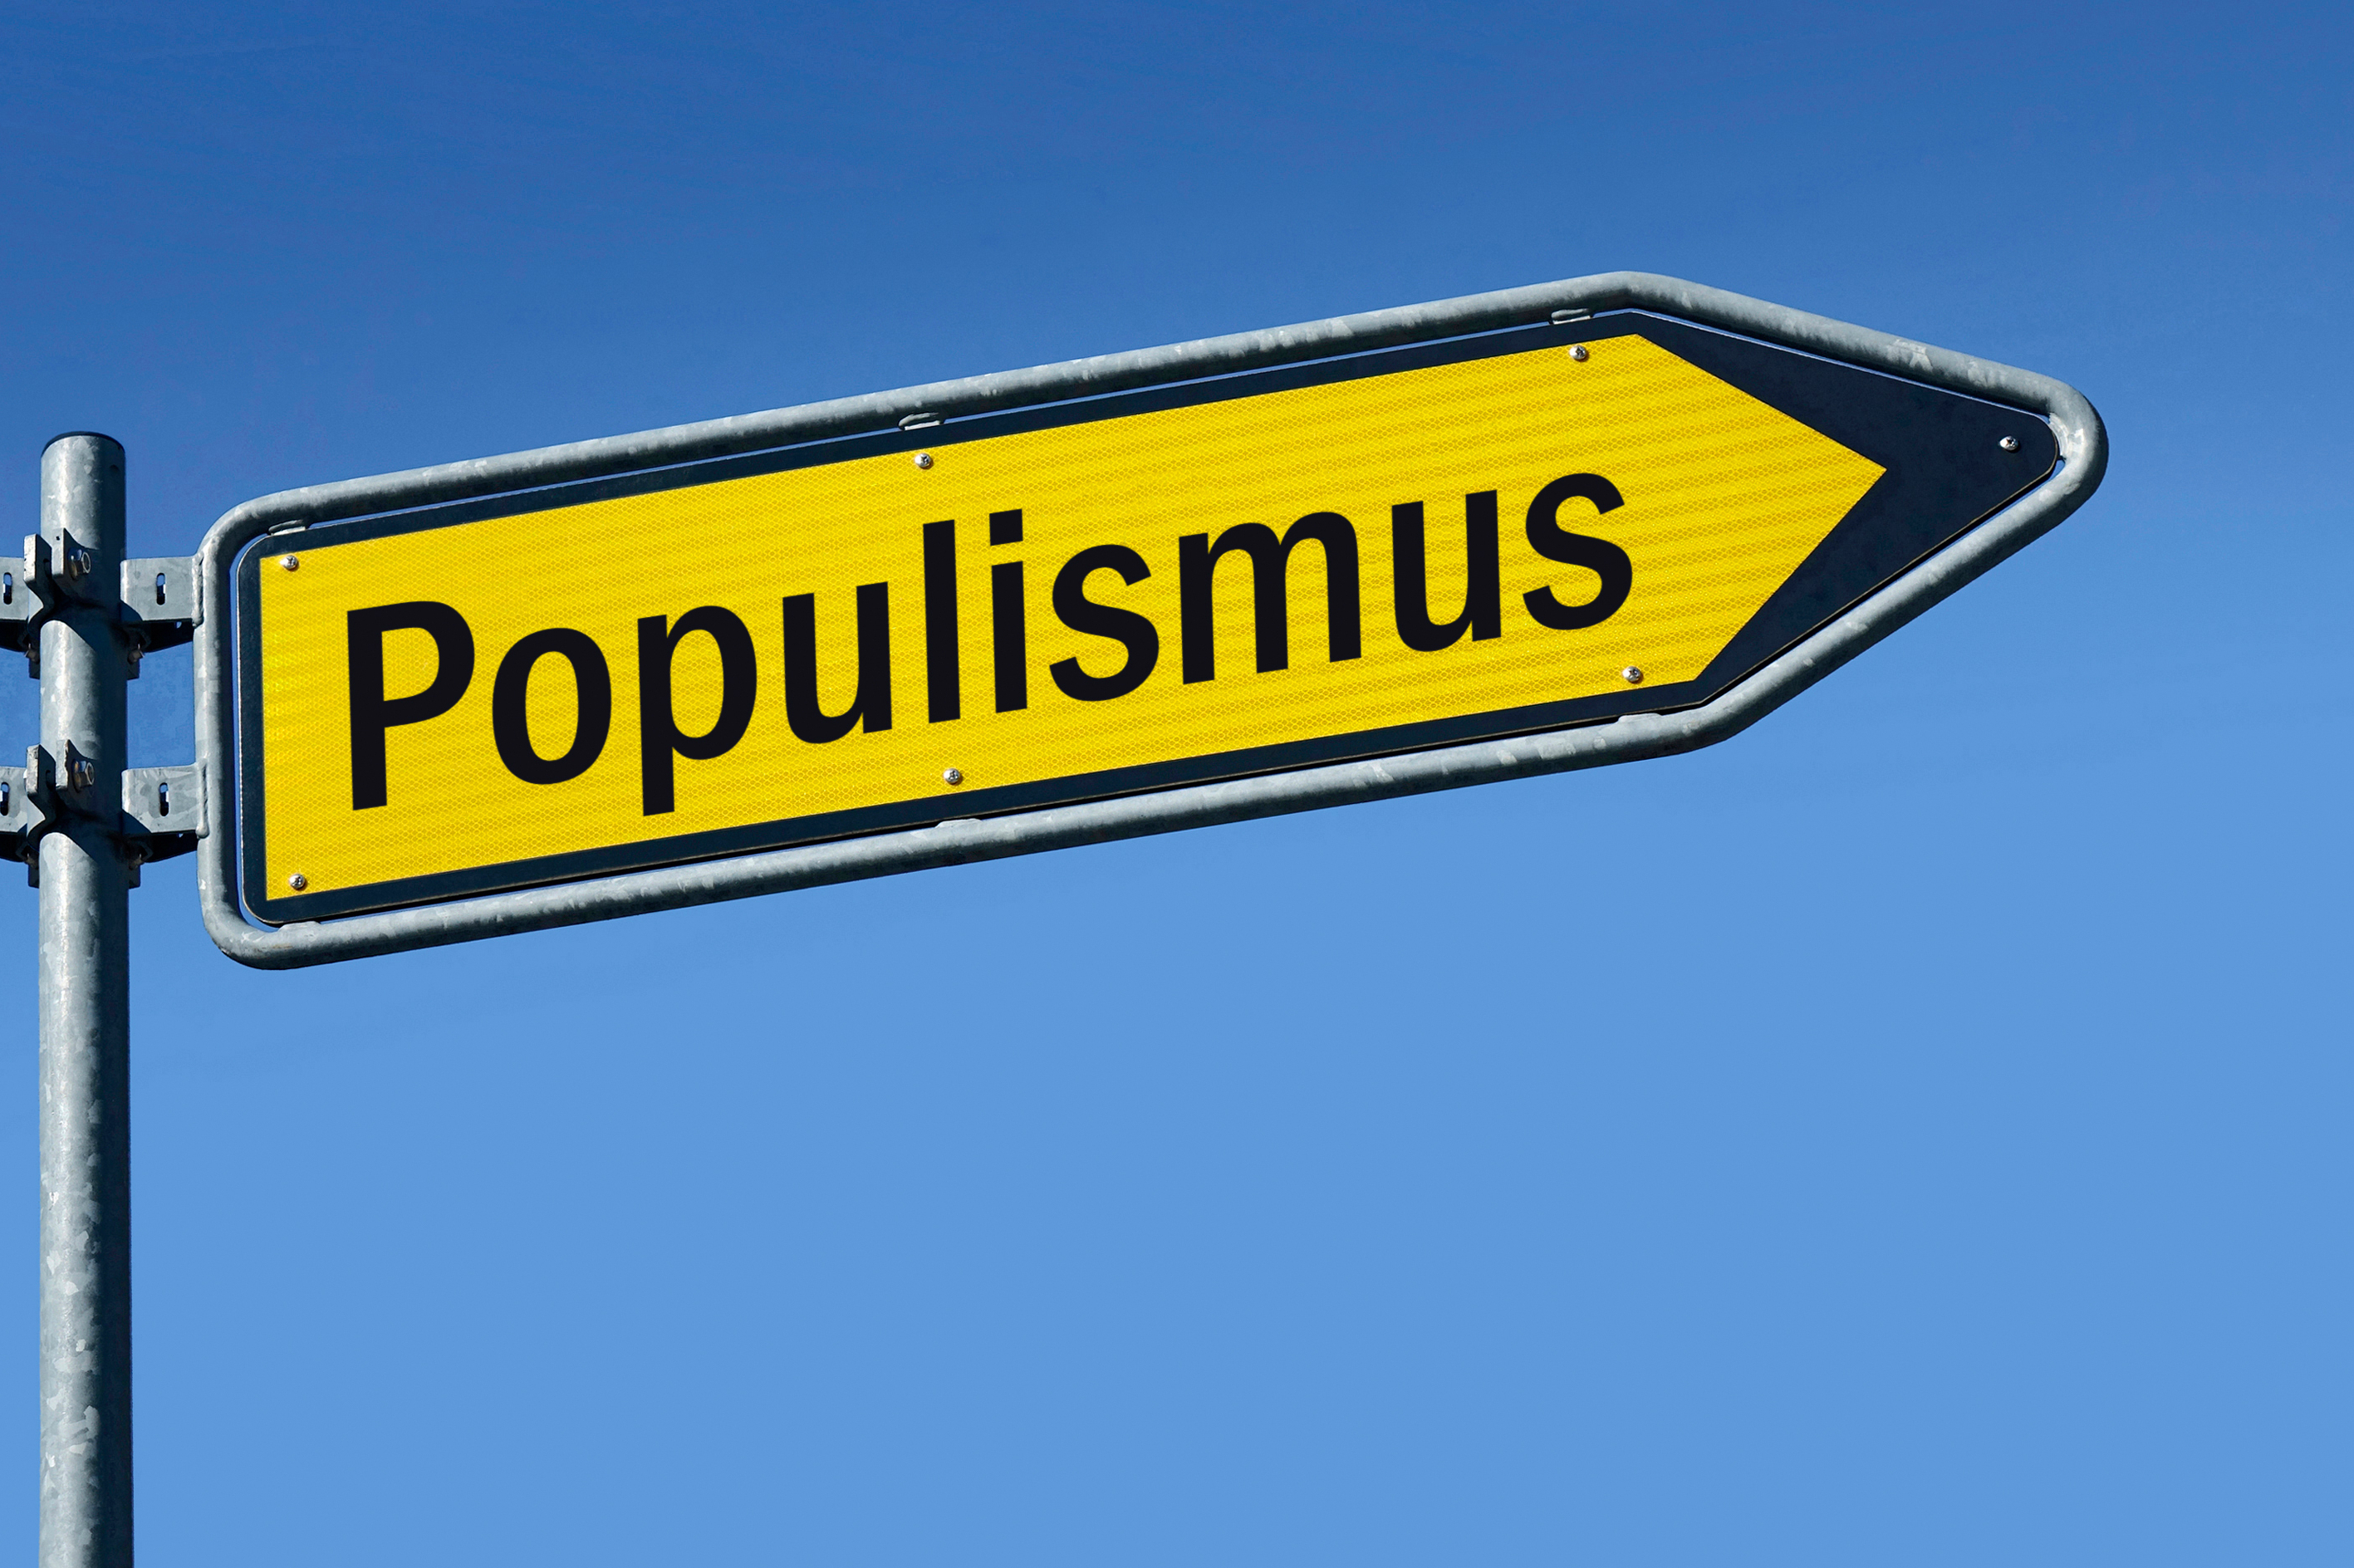 Wegschild, das in entgegengesetzter Richtung nach "Demokratie" und "Populismus" zeigt